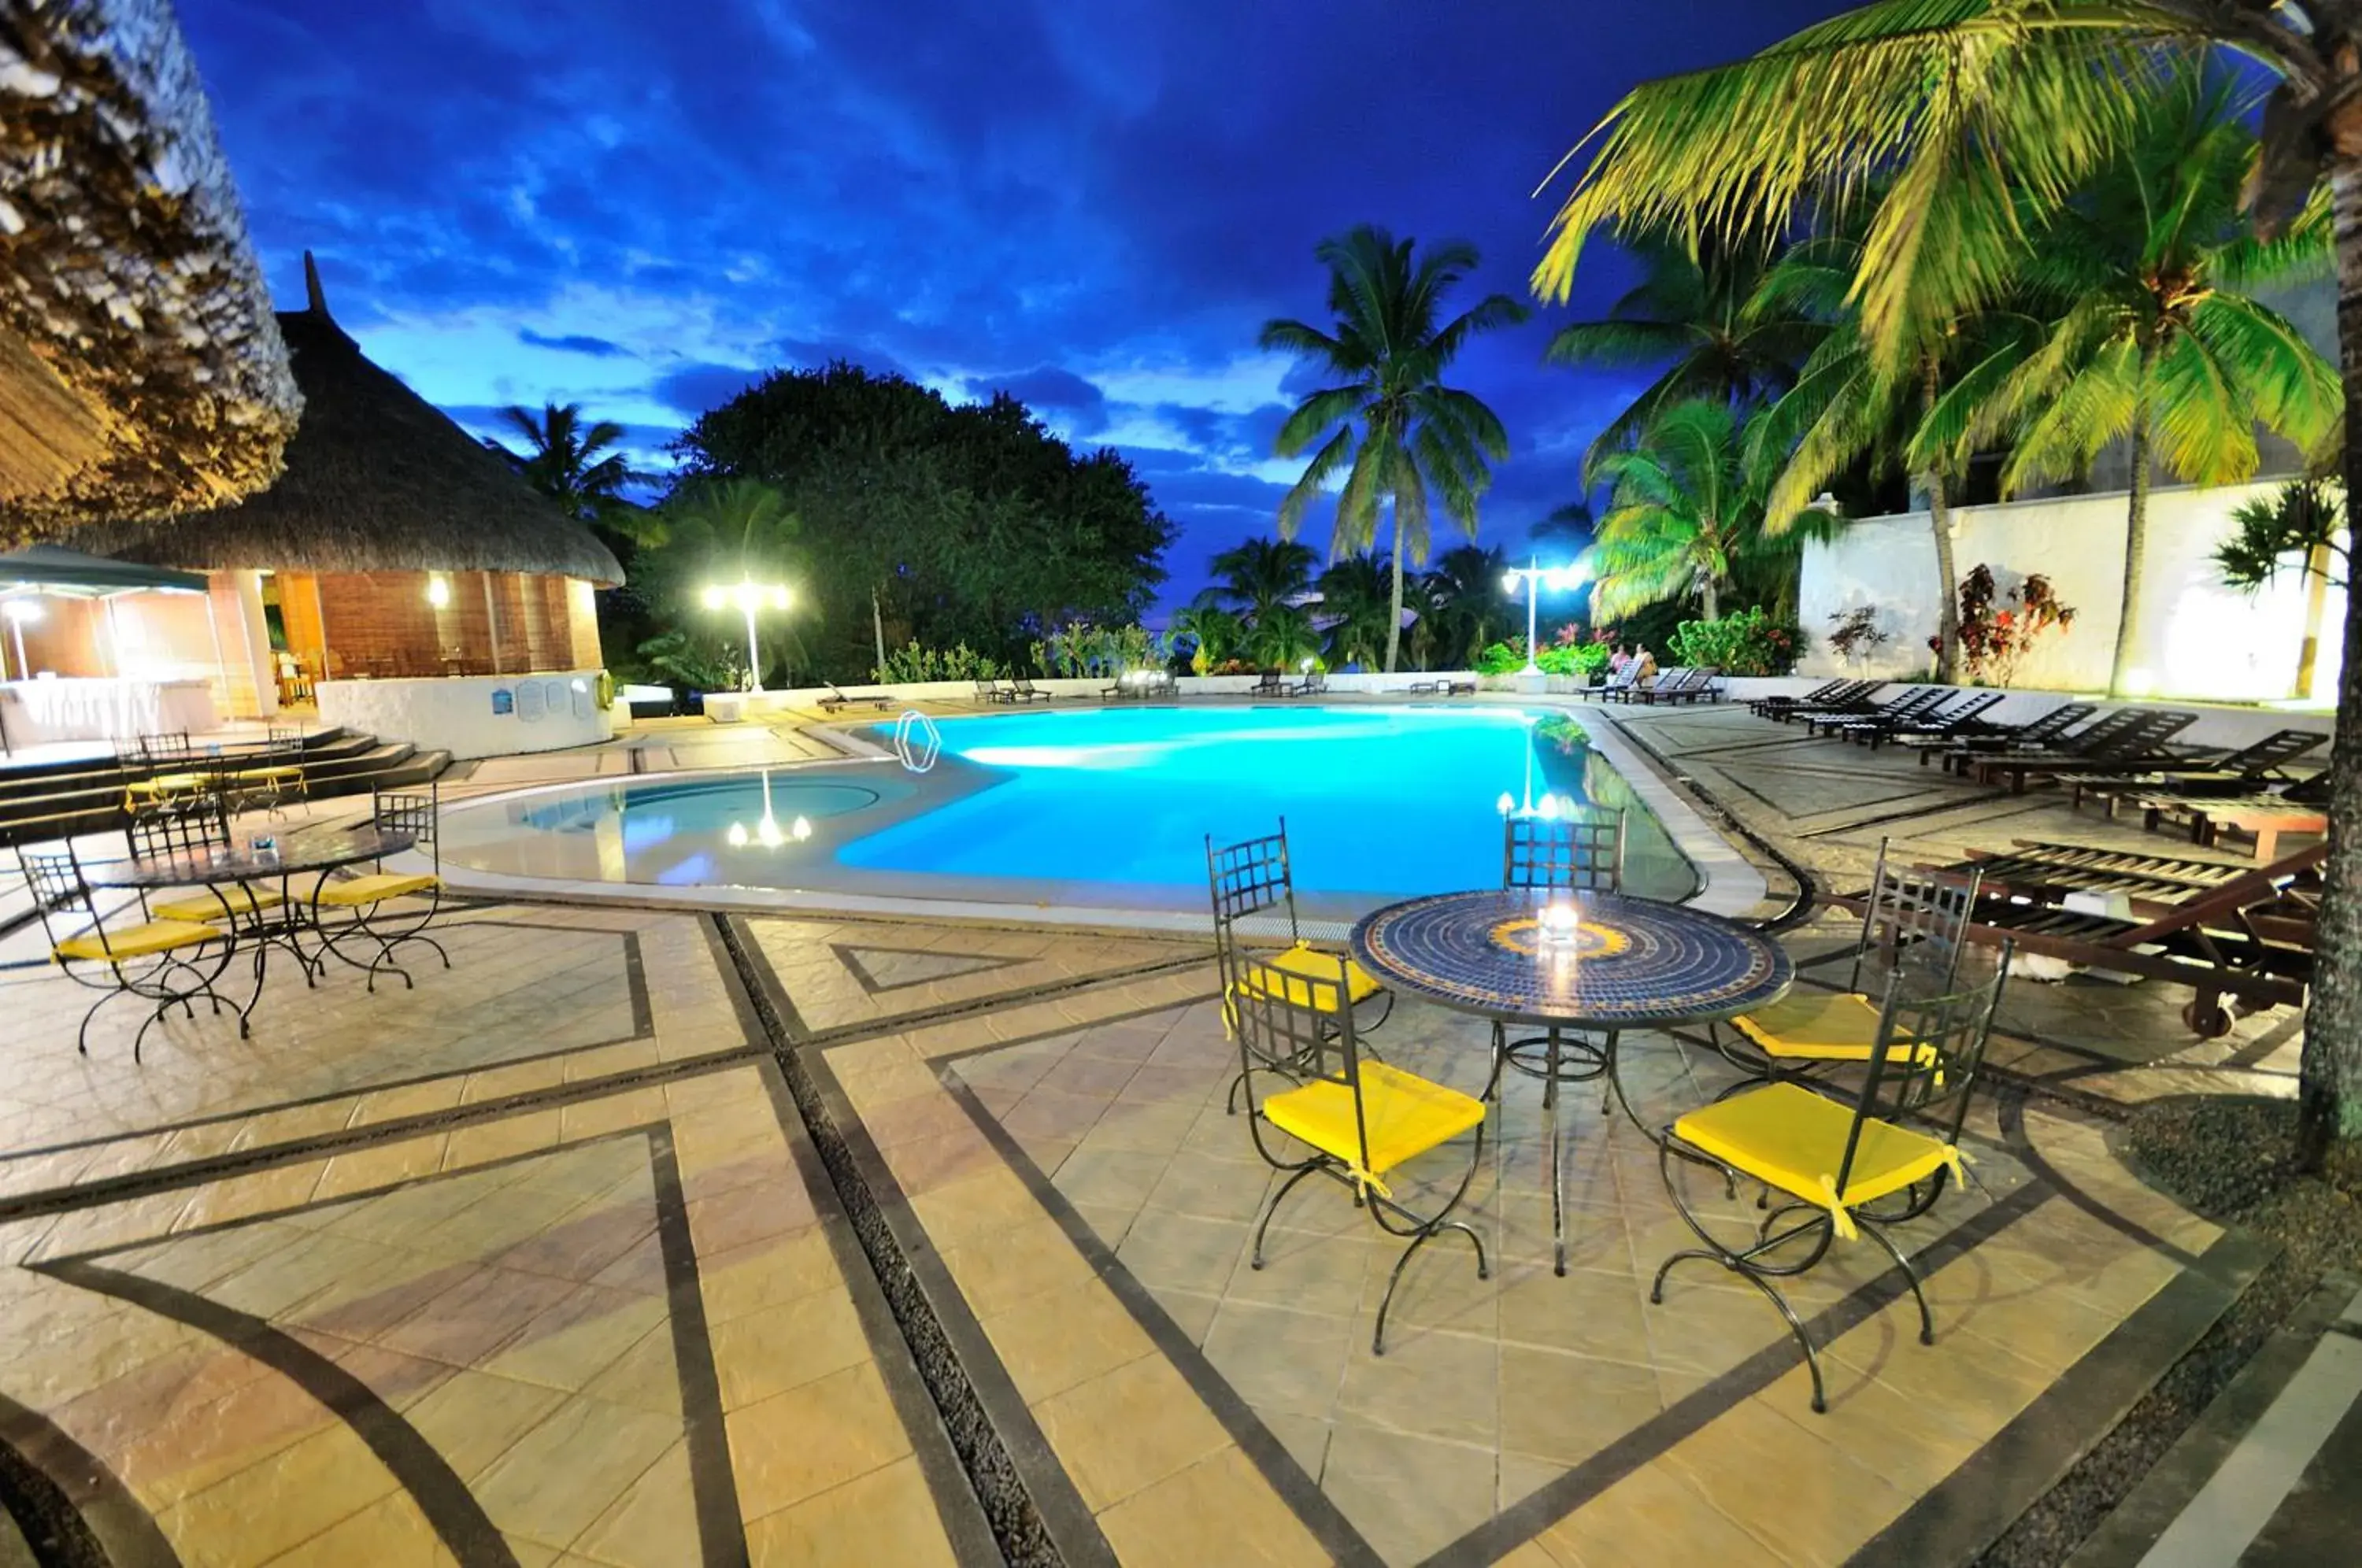 Swimming Pool in Casuarina Resort & Spa